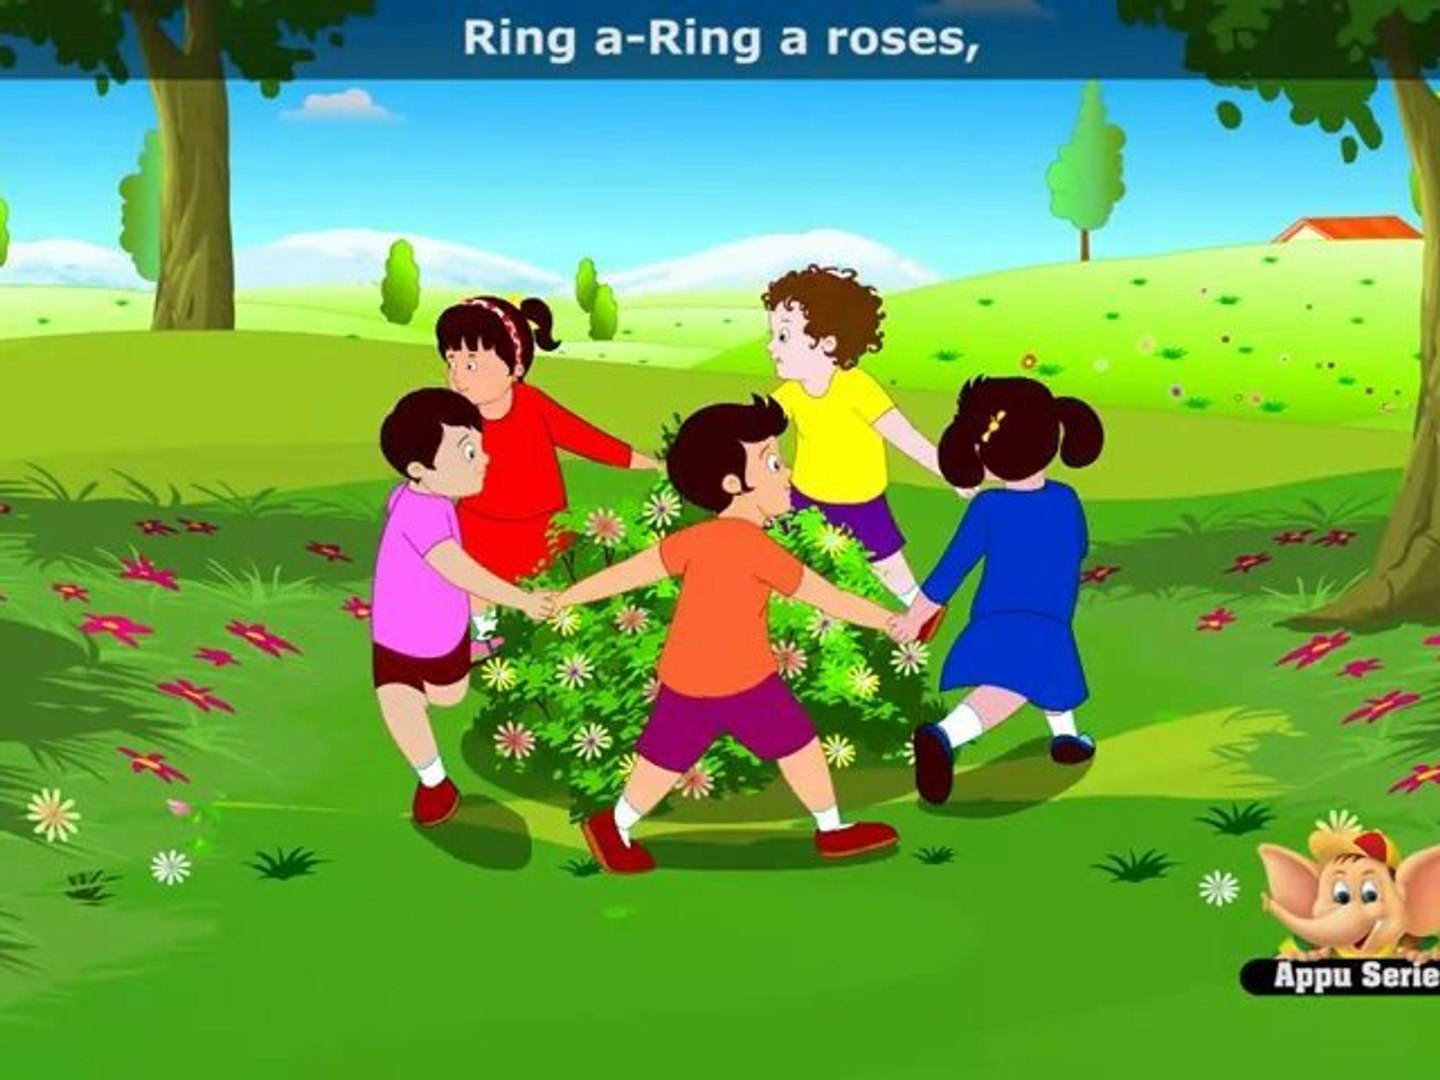 Ringa Ringa Roses - Nursery Rhyme with Lyrics - video Dailymotion